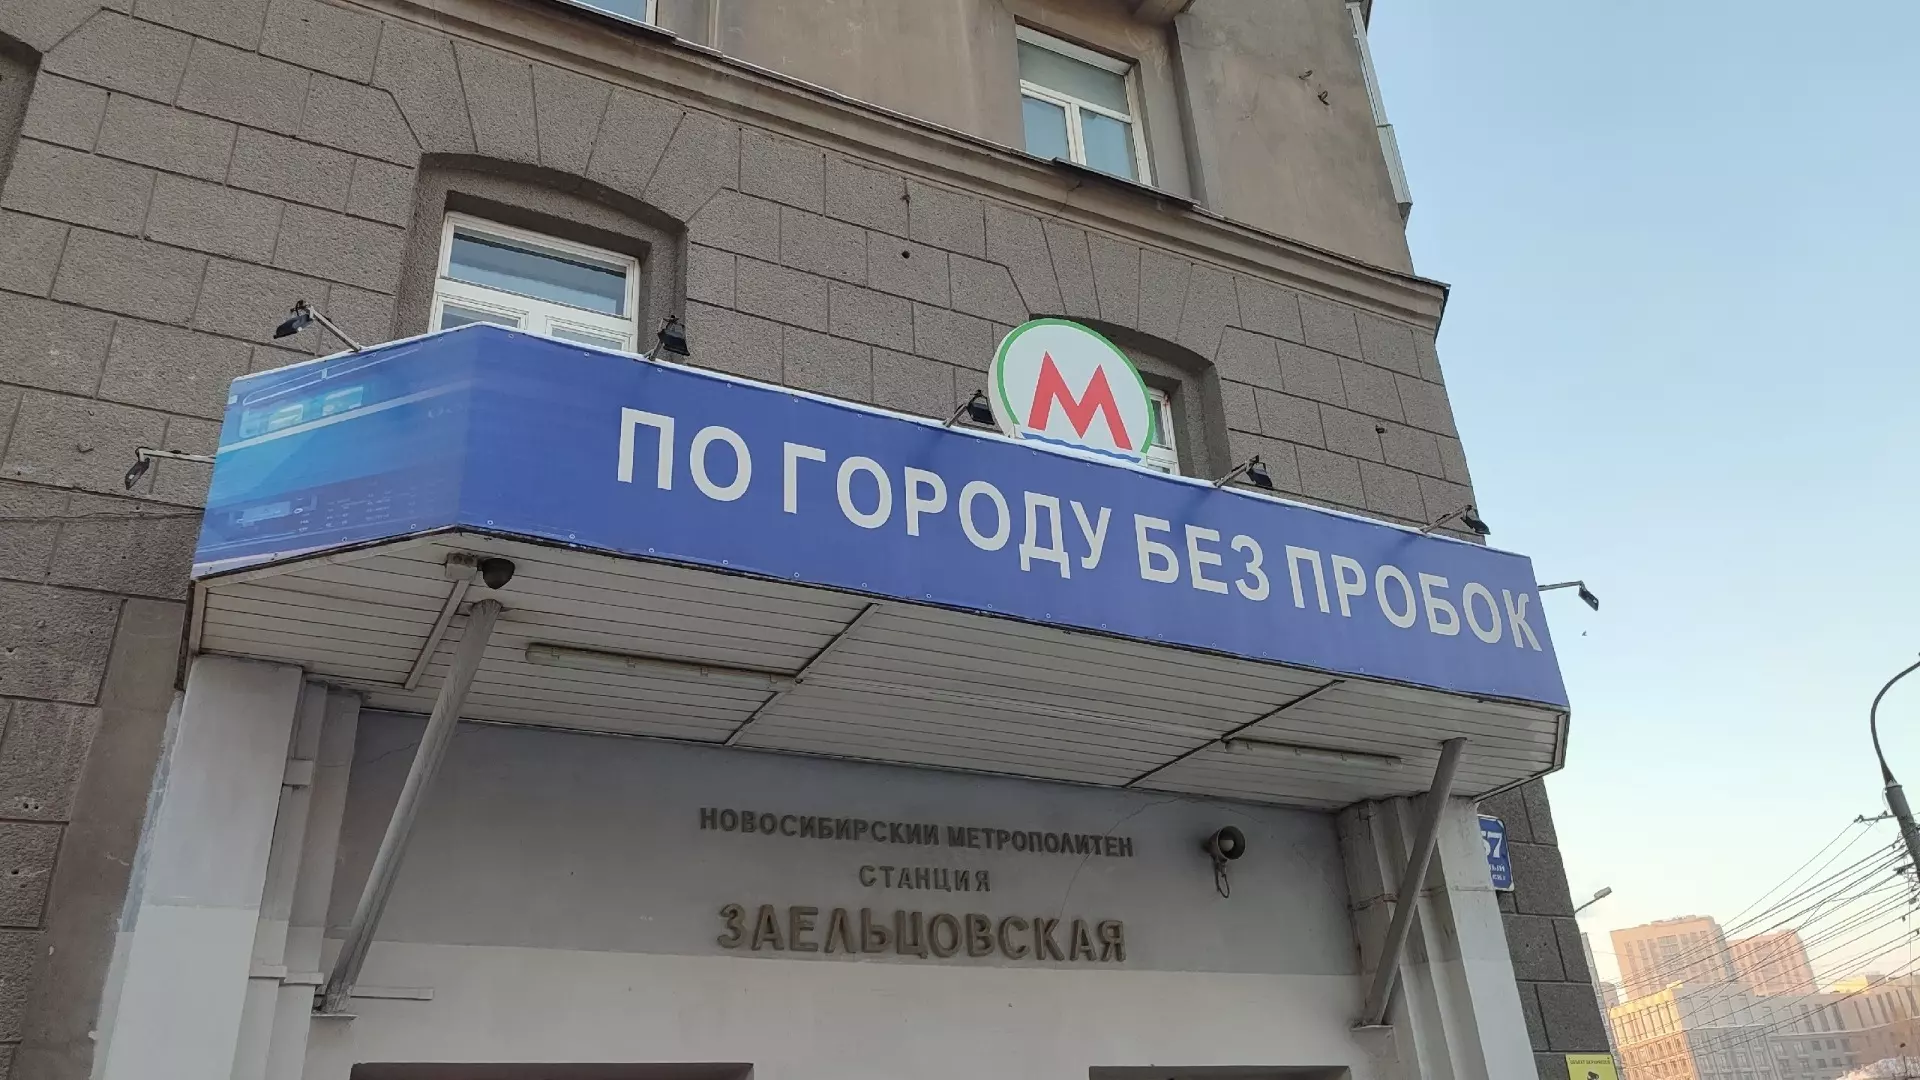 Сейчас денег на строительство метро у Новосибирска нет